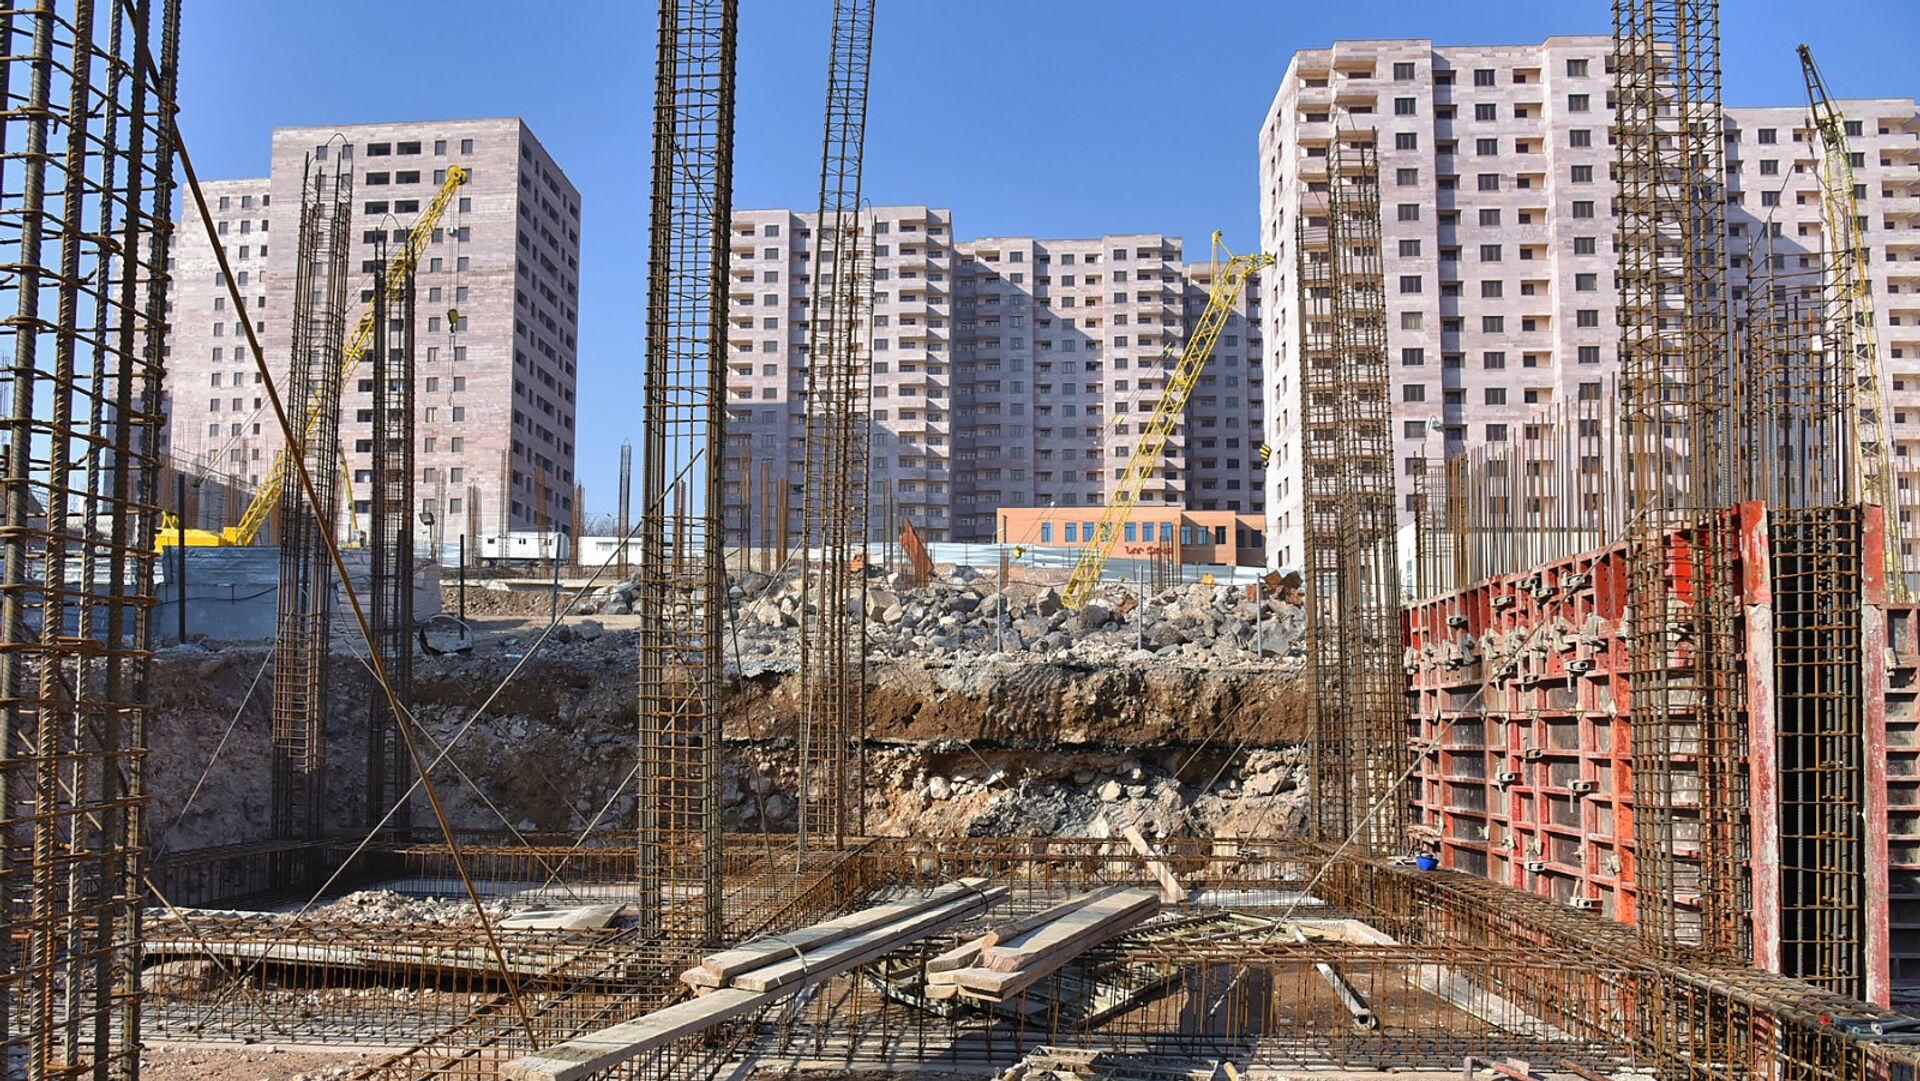 AEB ülkelerinde inşaat işlerinin hacmi arttı: En fazla aktivite Ermenistan'da görülüyor